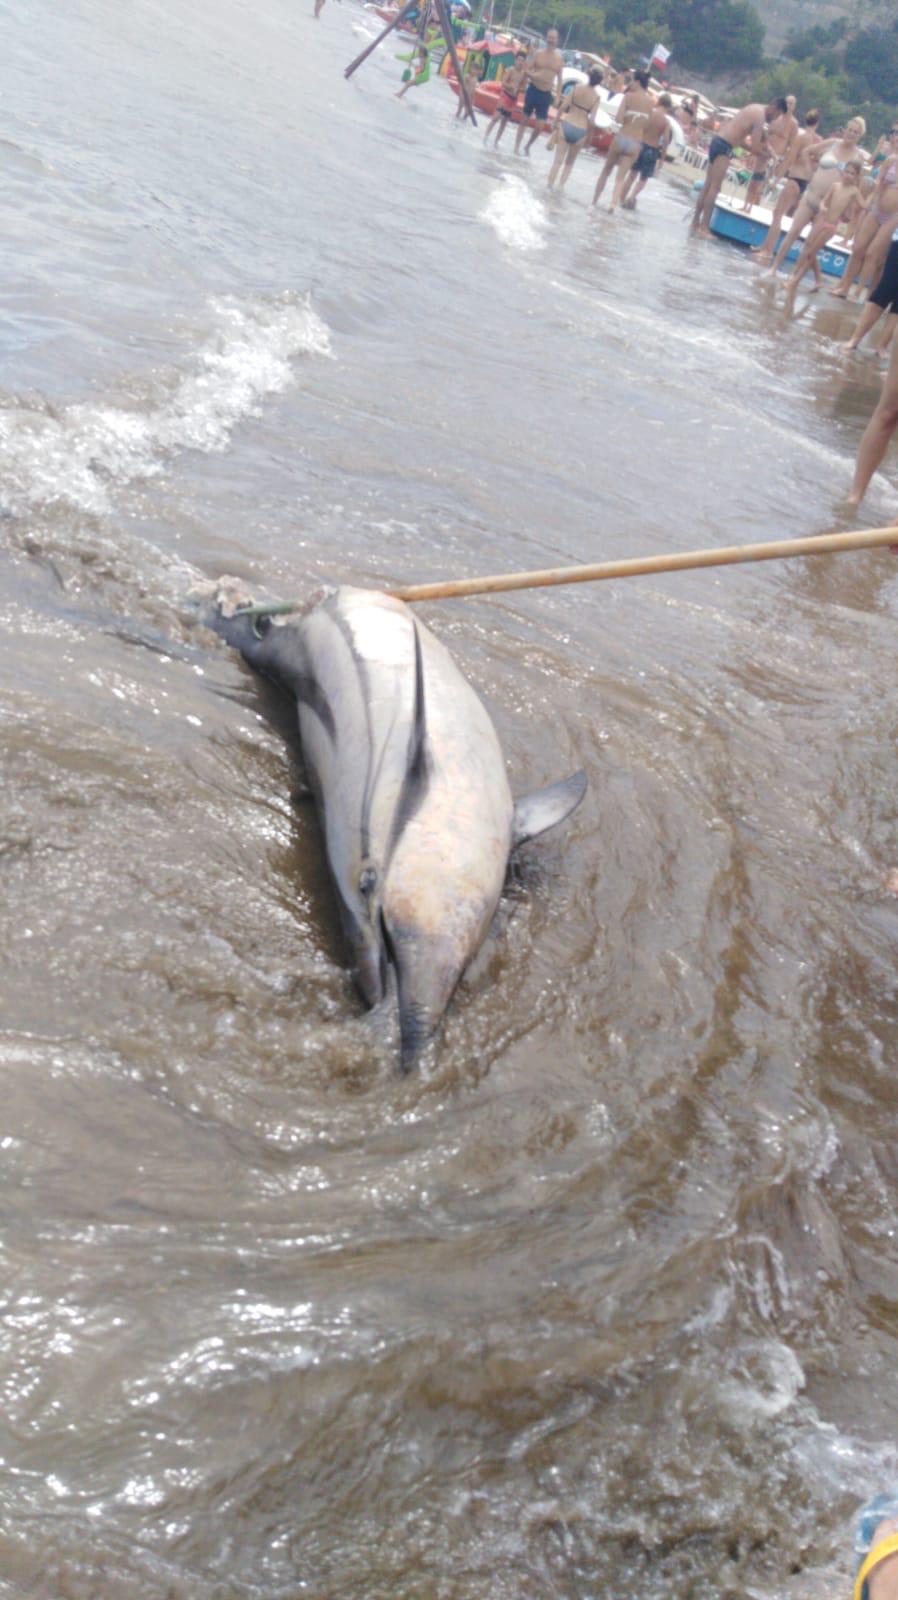 Esemplare di delfino morto trovato in Toscana, è il 36/o da inizio anno